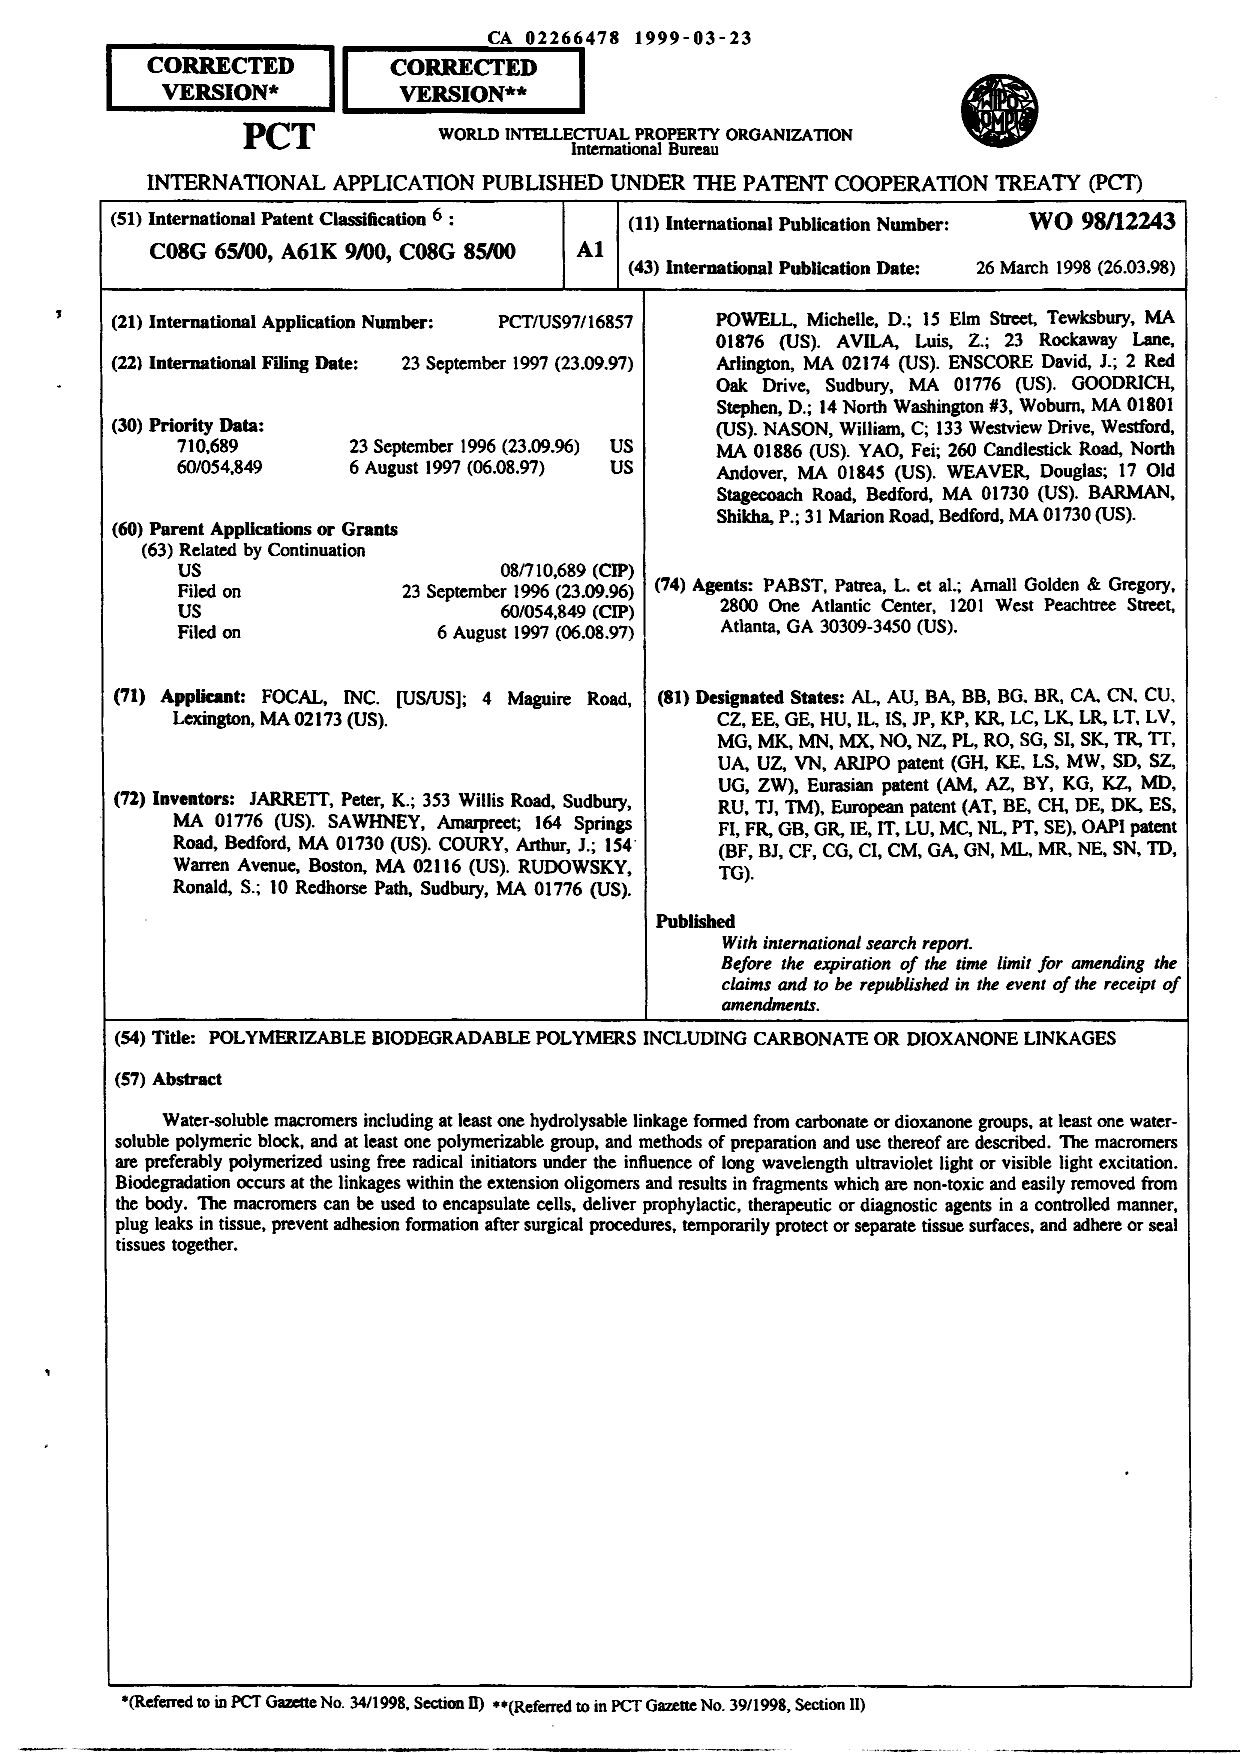 Document de brevet canadien 2266478. Abrégé 19990323. Image 1 de 1